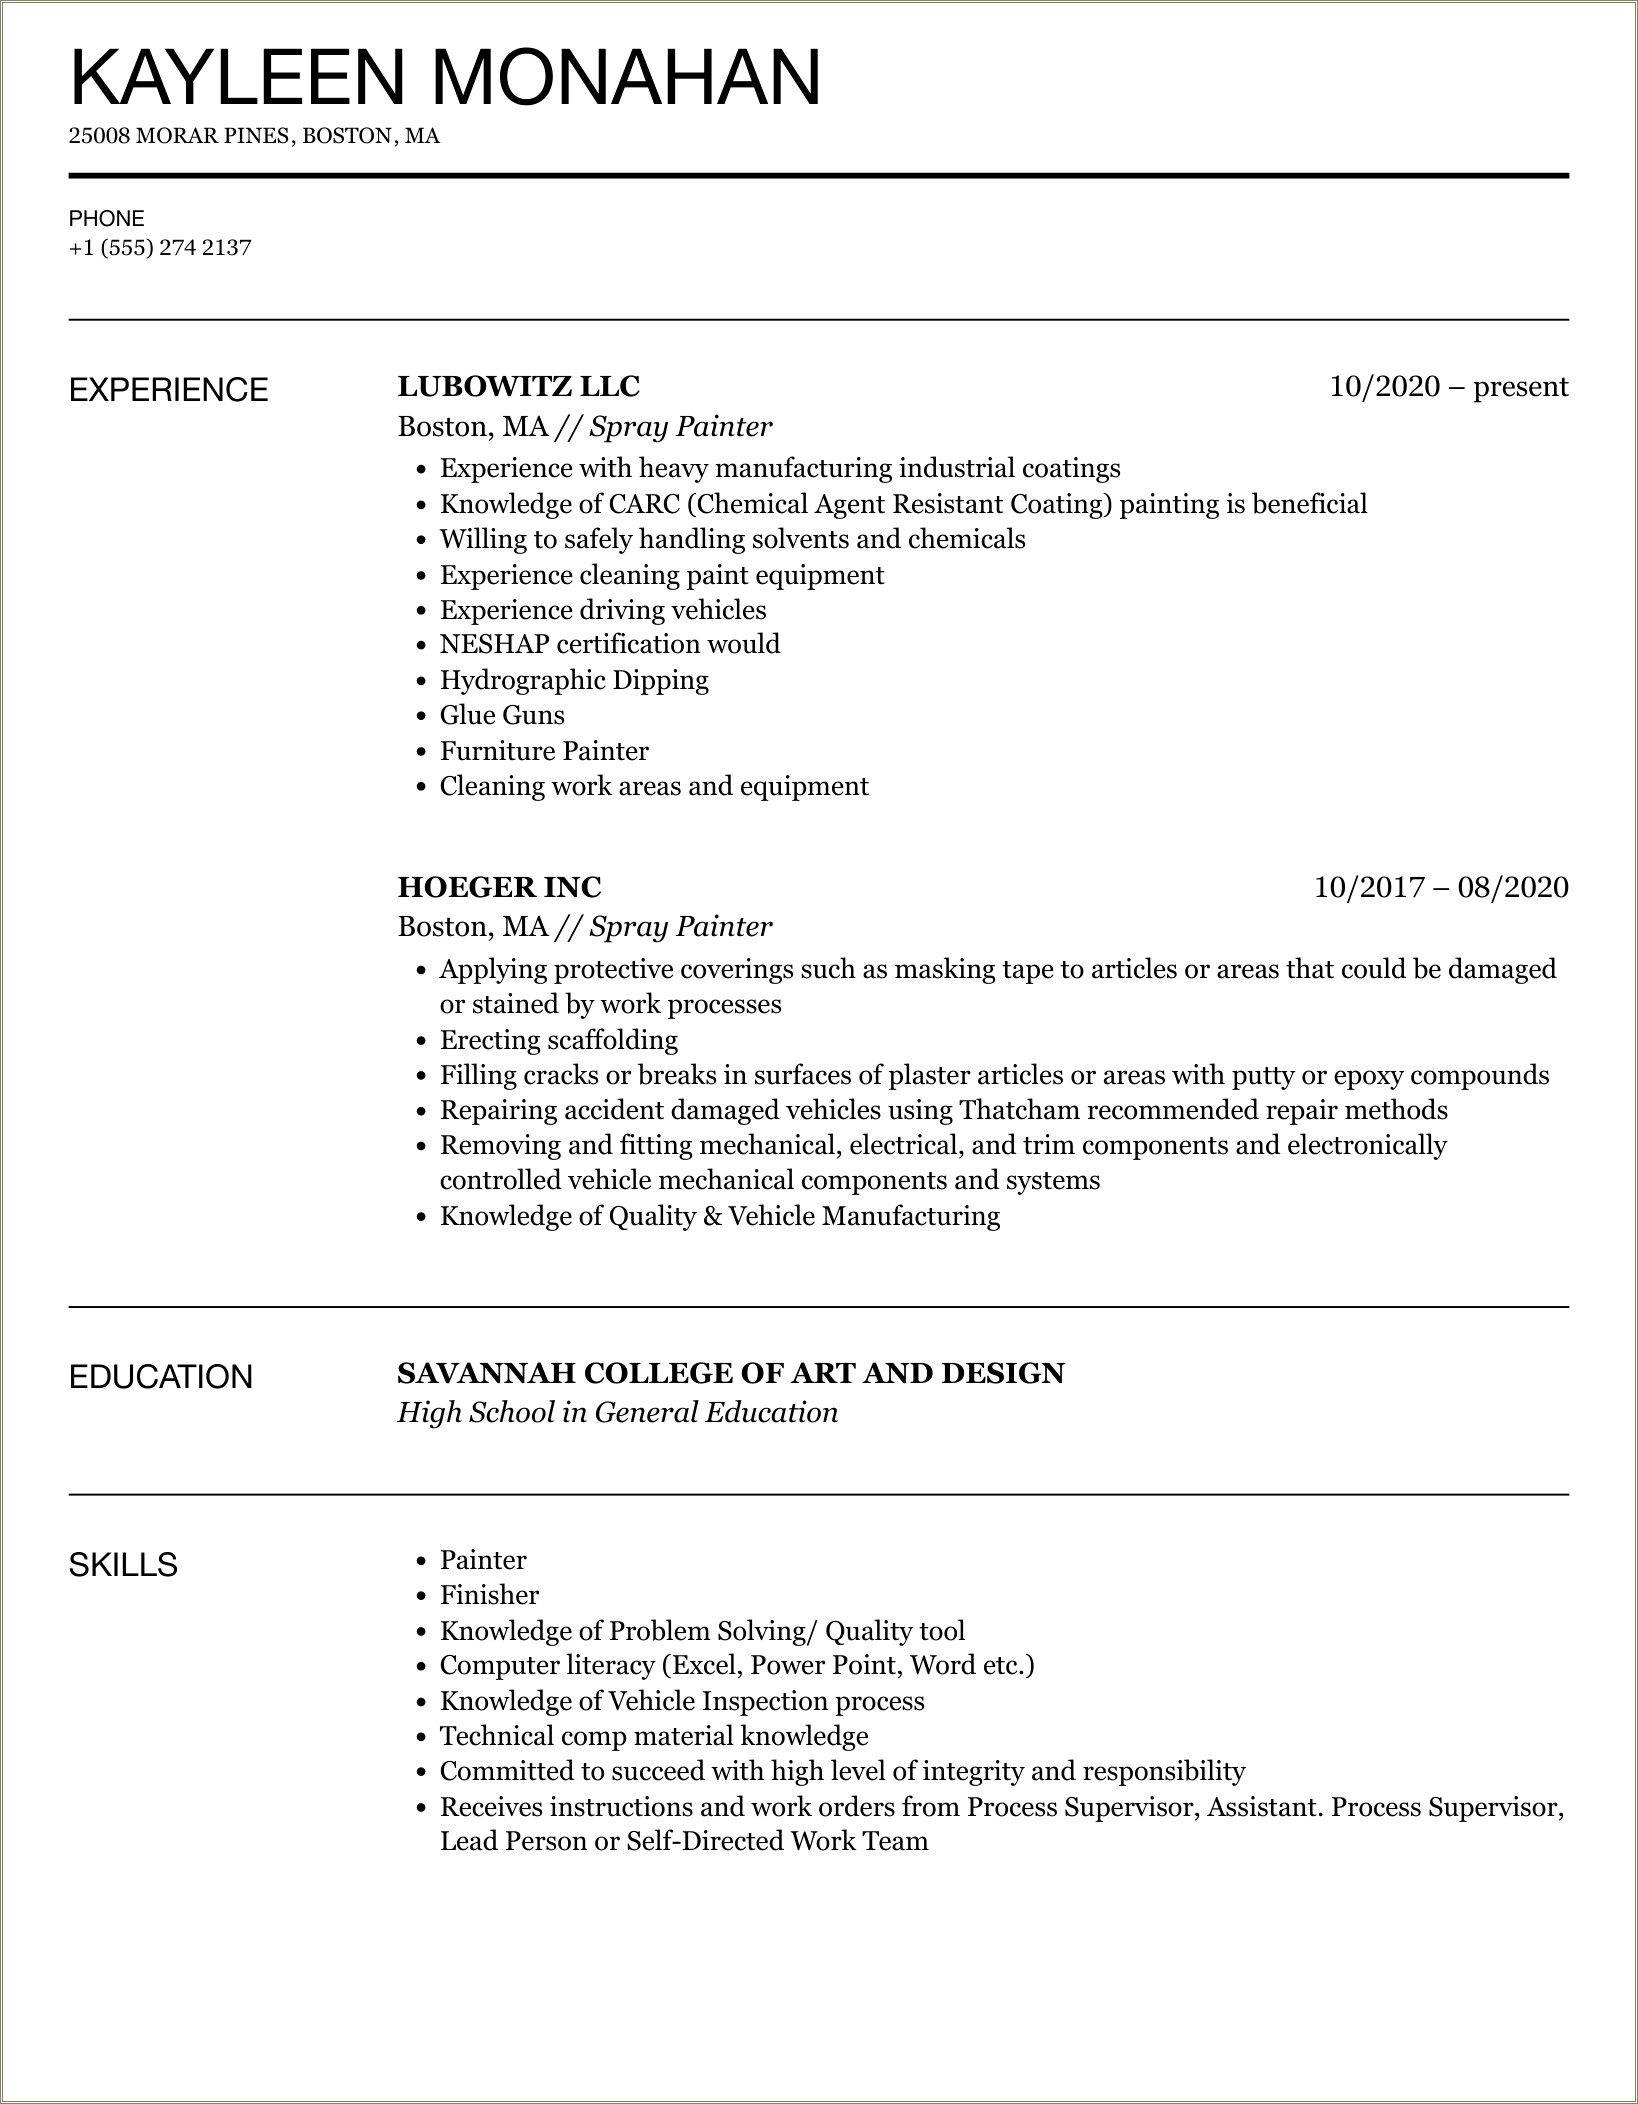 Job Description For Resume Corporate Painter